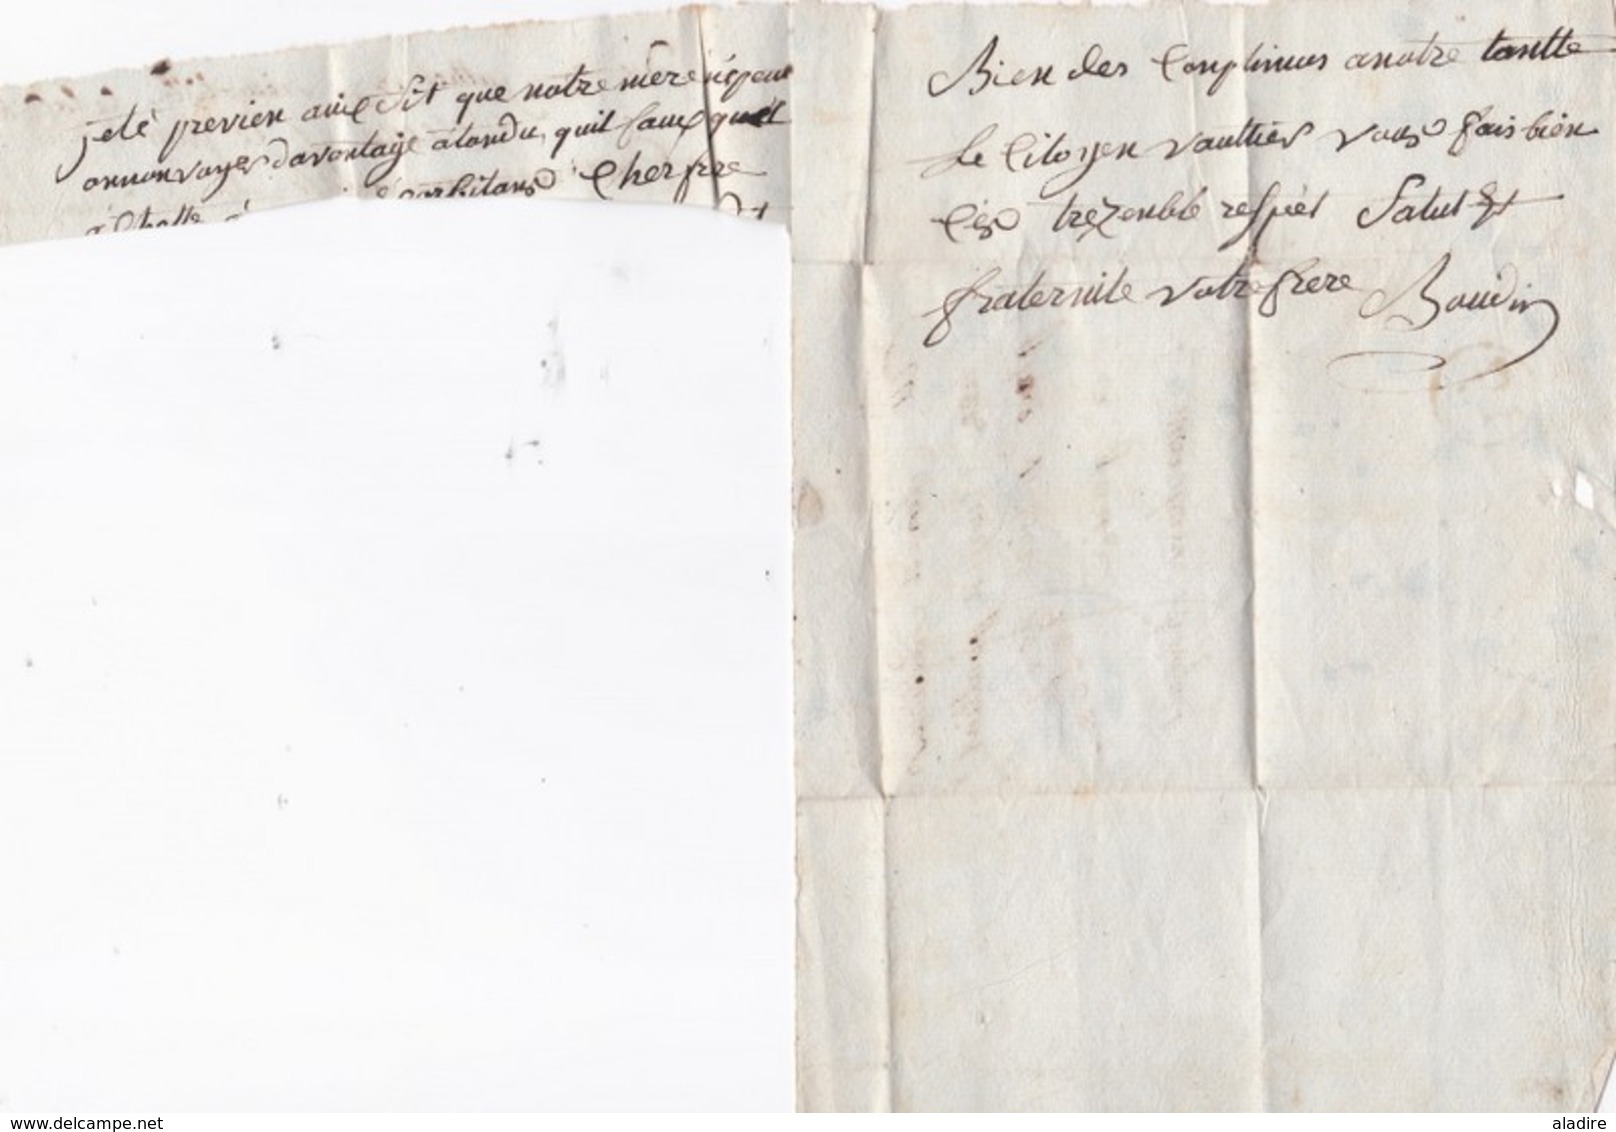 1795 - Marque Postale  en rouge 83 JOIGNY, Yonne  sur lettre avec correspondance vers Paris - cachet à date d'arrivée